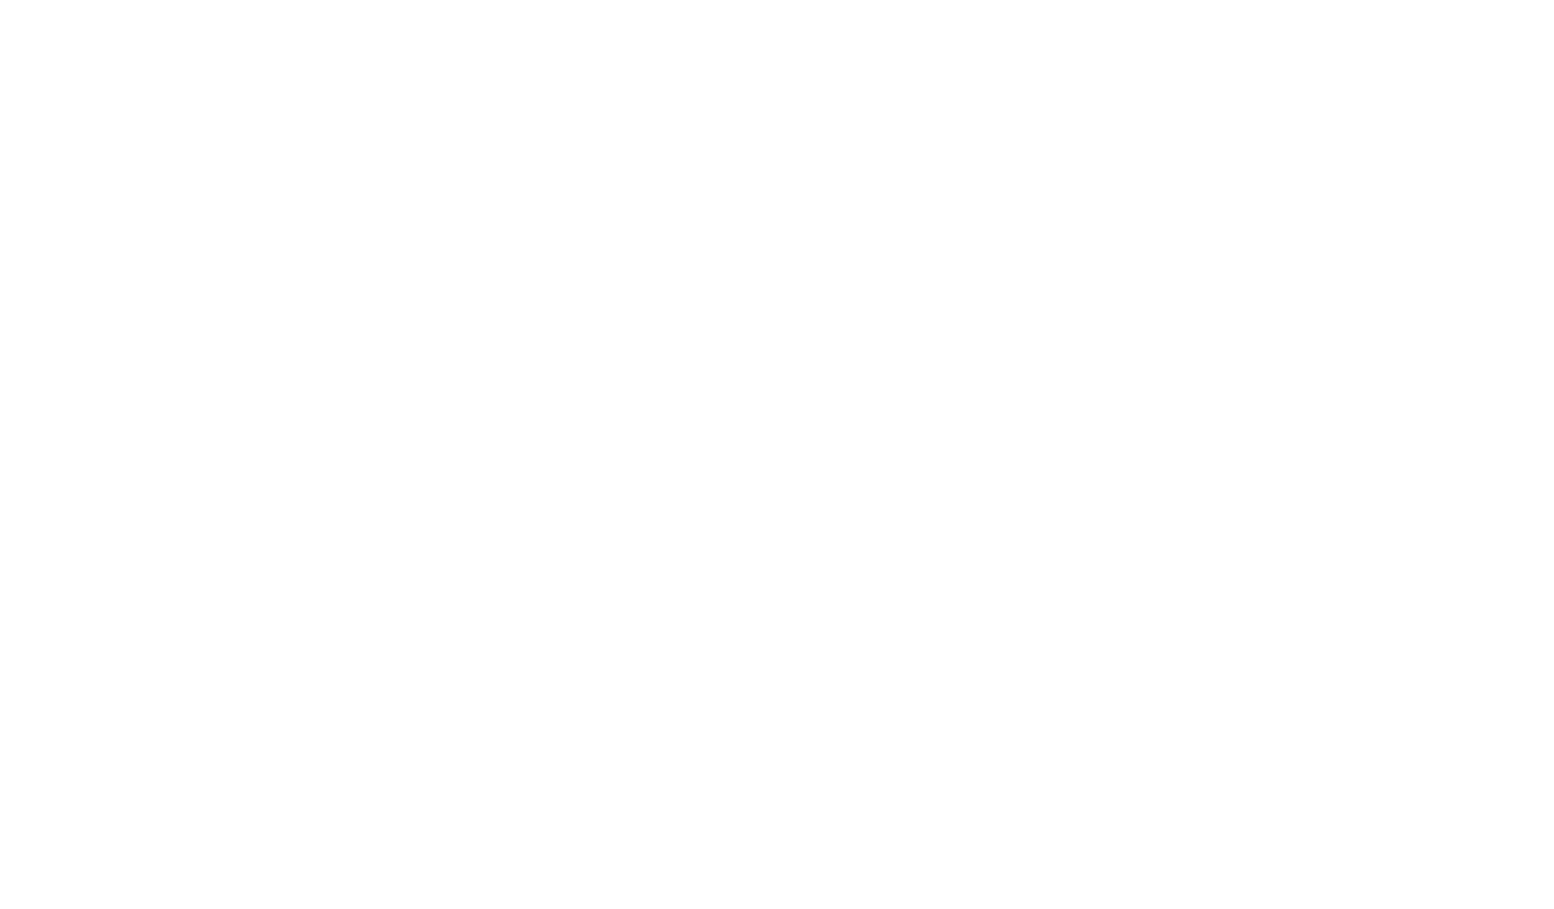 Wirtualna Polska (WP Holding) Logo für dunkle Hintergründe (transparentes PNG)